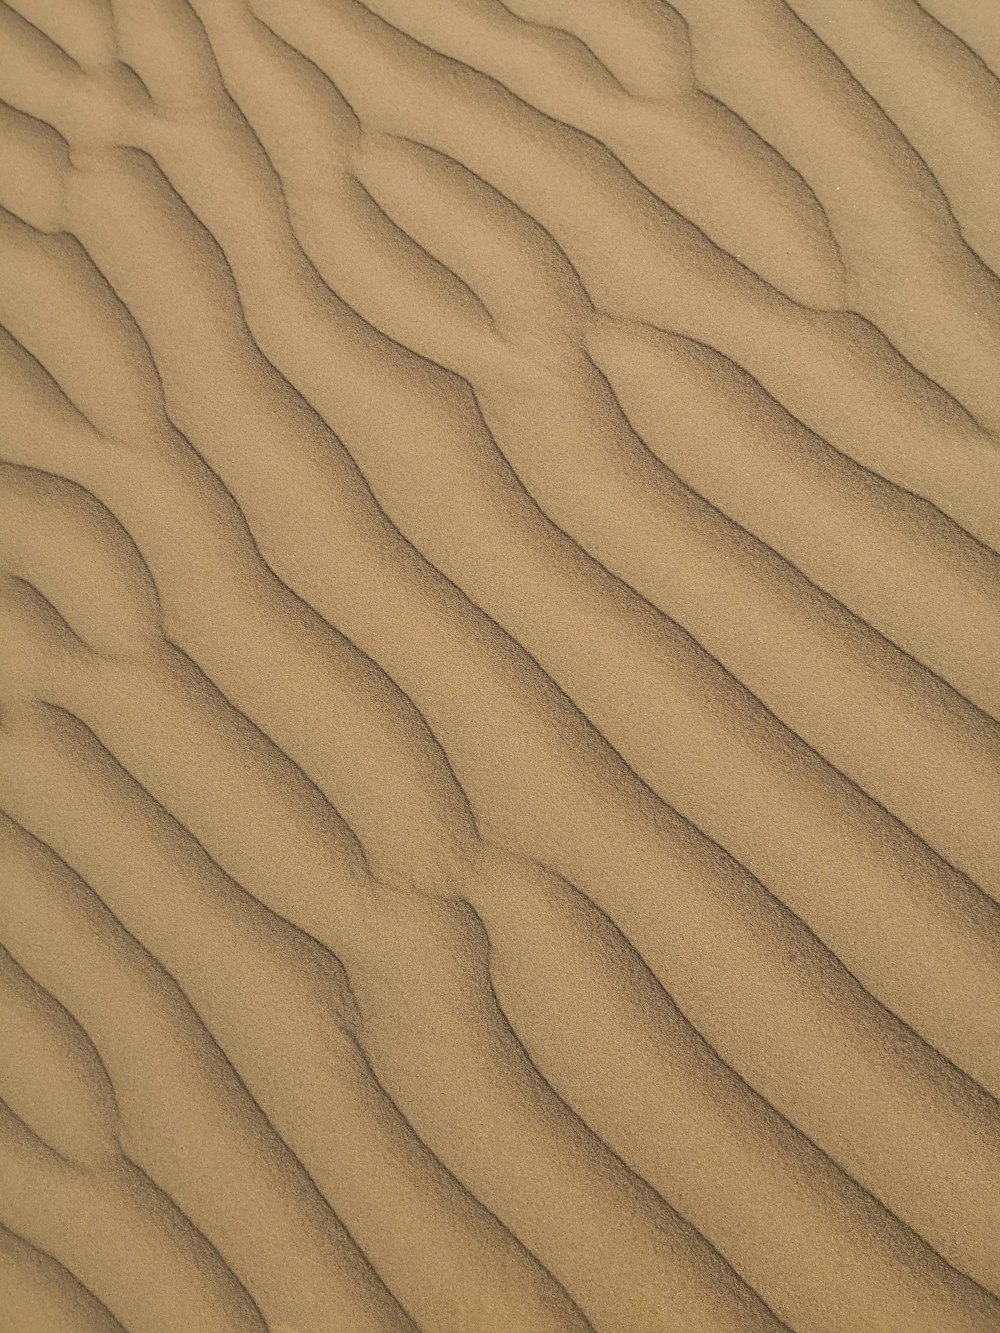 모래에 물결 모양의 선이 있는 모래 언덕